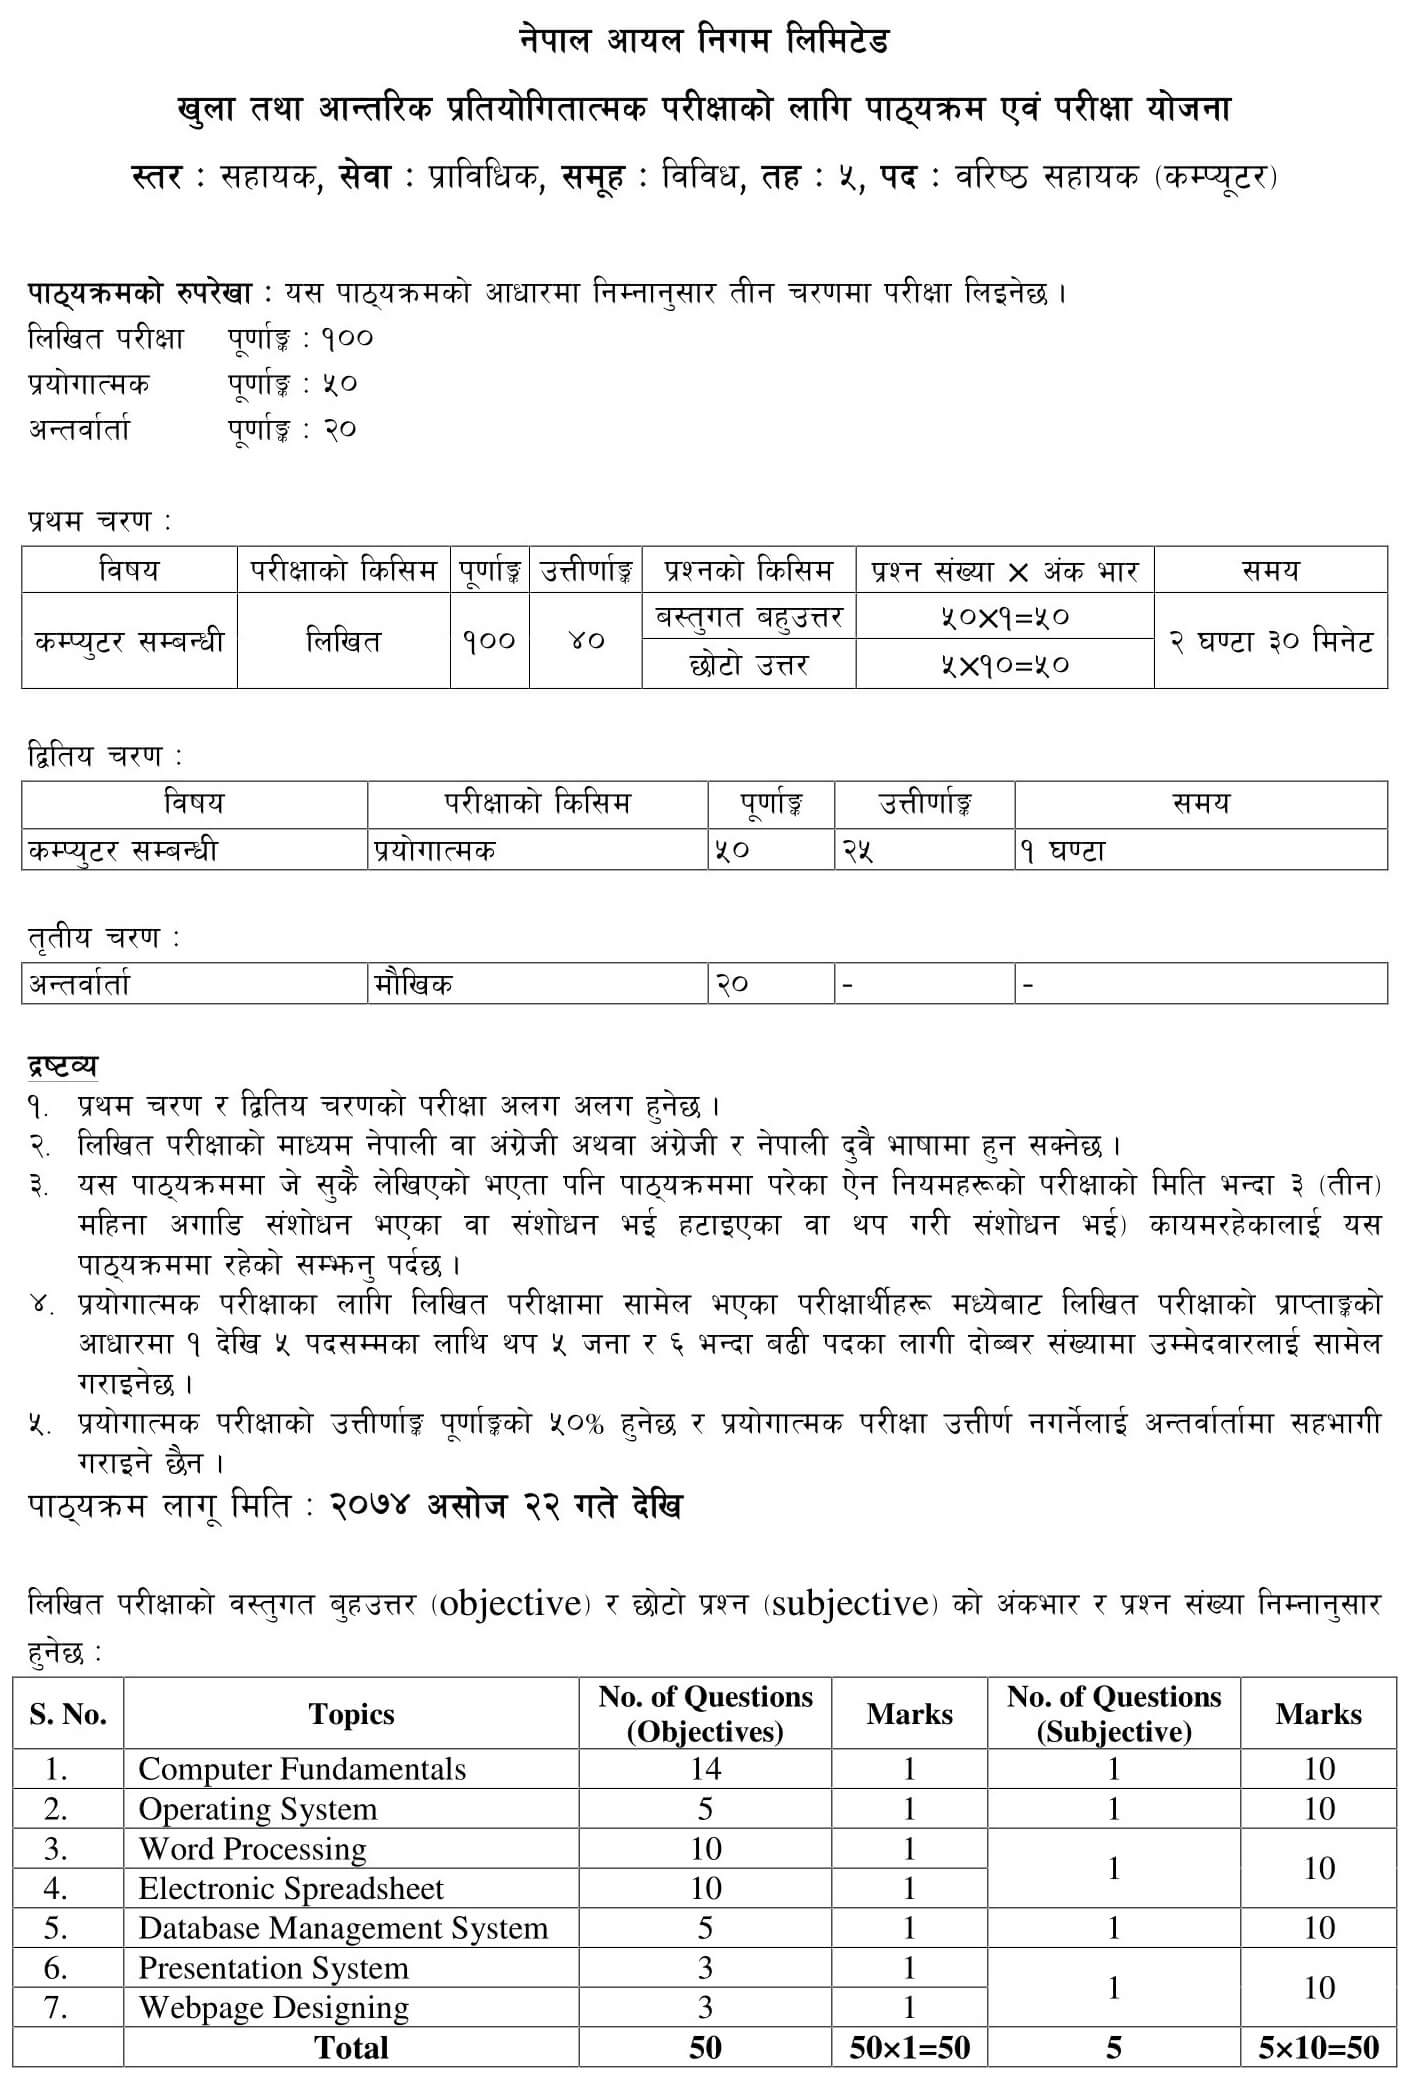 Nepal Oil Corporation - NOC Syllabus Department: IT Rank: Level 5 Senior Assistant (Computer) Date: 2074/06/22. NOC Syllabus Level 5 Senior Assistant Computer PDF Download